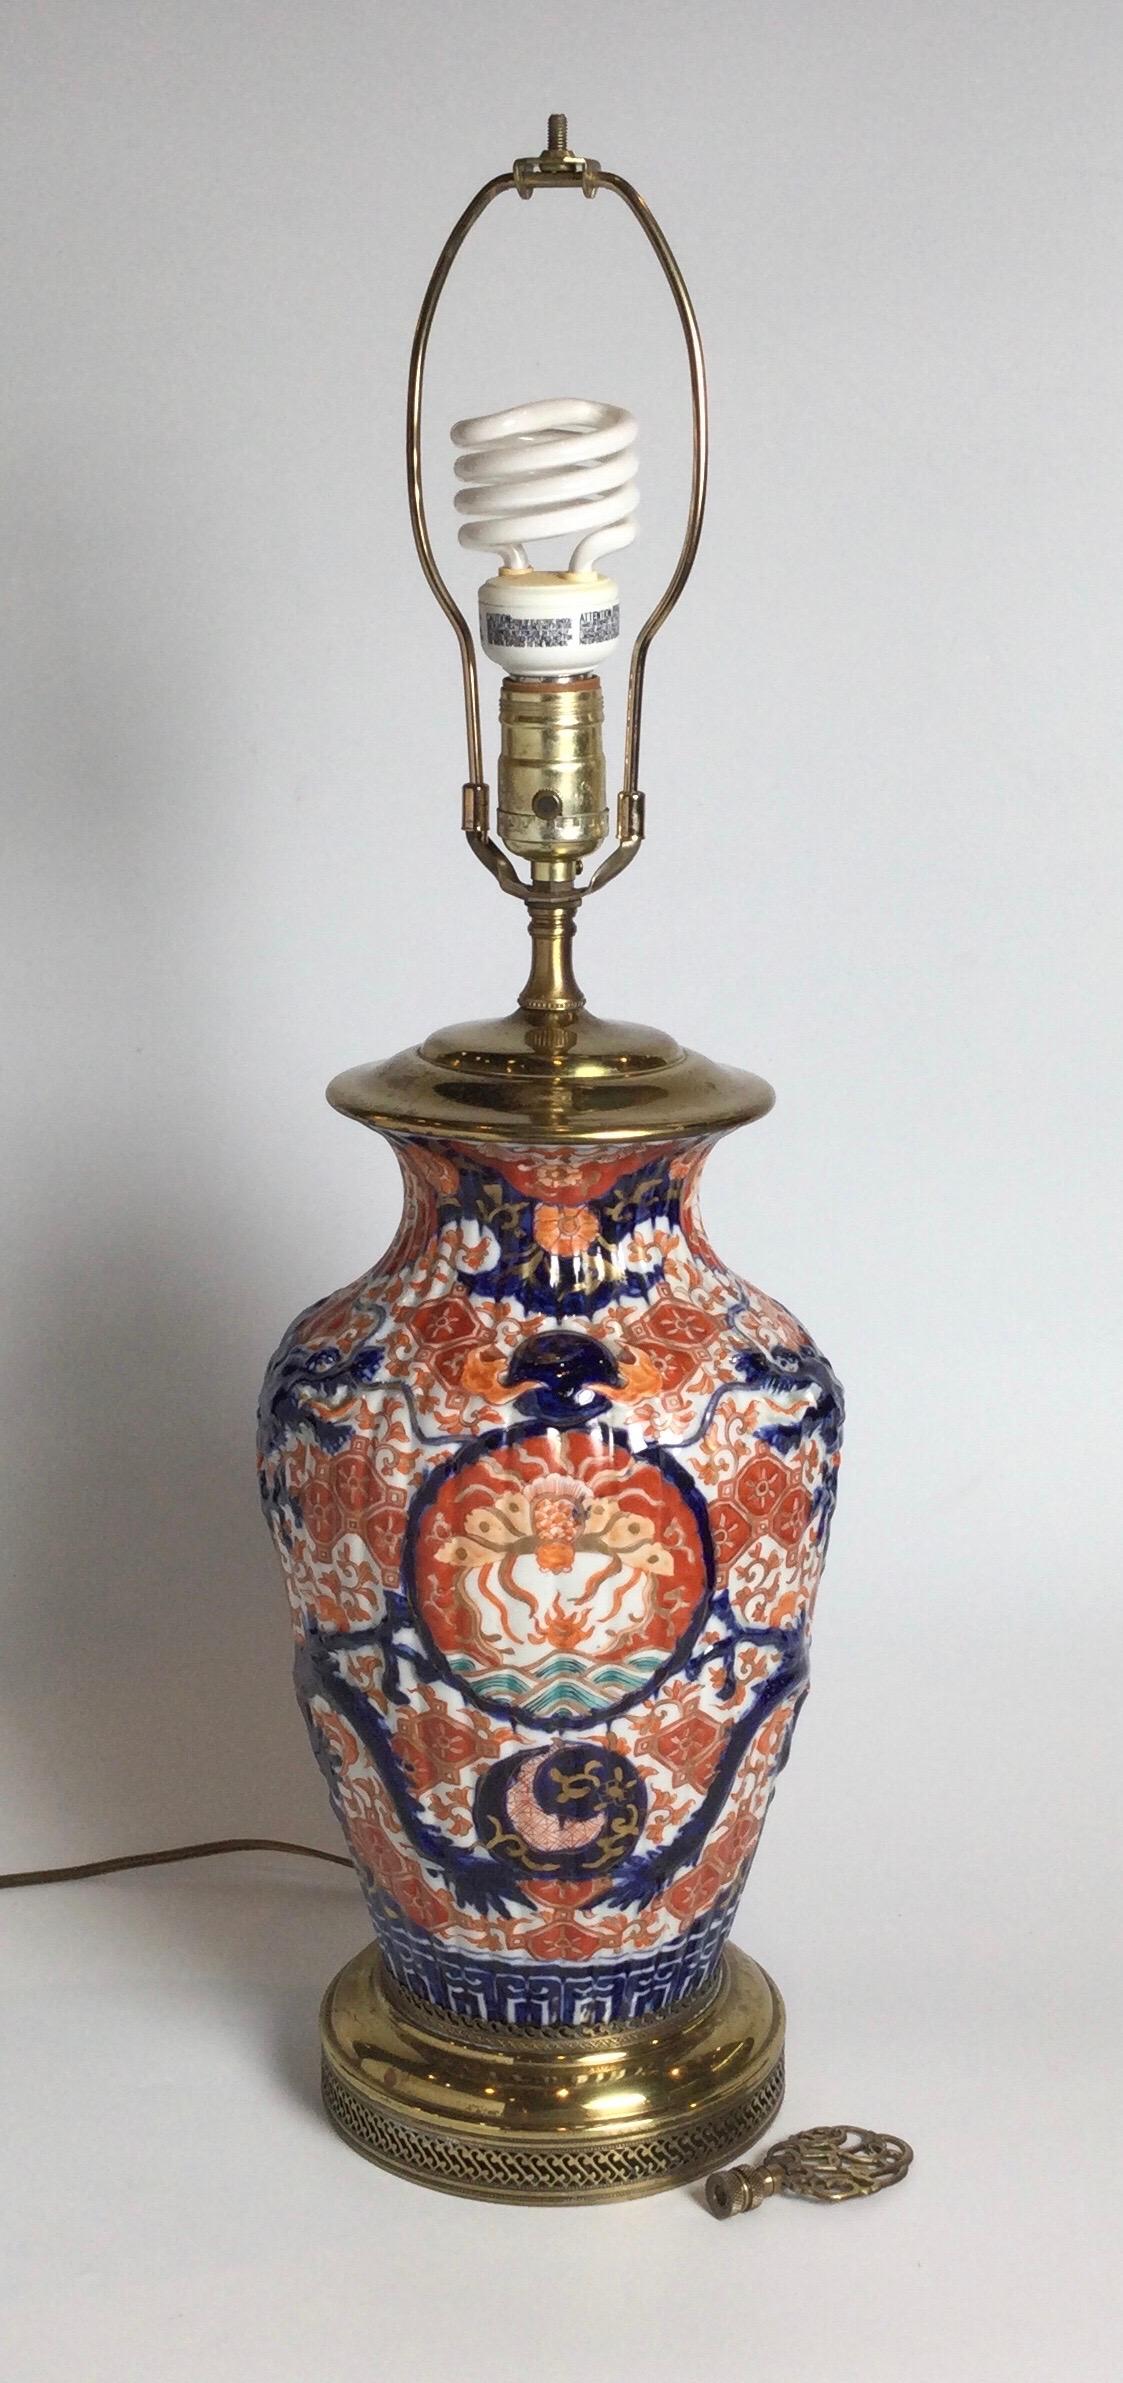 Vase classique en porcelaine Imari rouge fer et bleu cobalt transformé en lampe/ Ce vase japonais datant de 1900, imprimé à la main dans les couleurs traditionnelles, a probablement été électrifié dans les années 1920. L'abat-jour n'est fourni qu'à